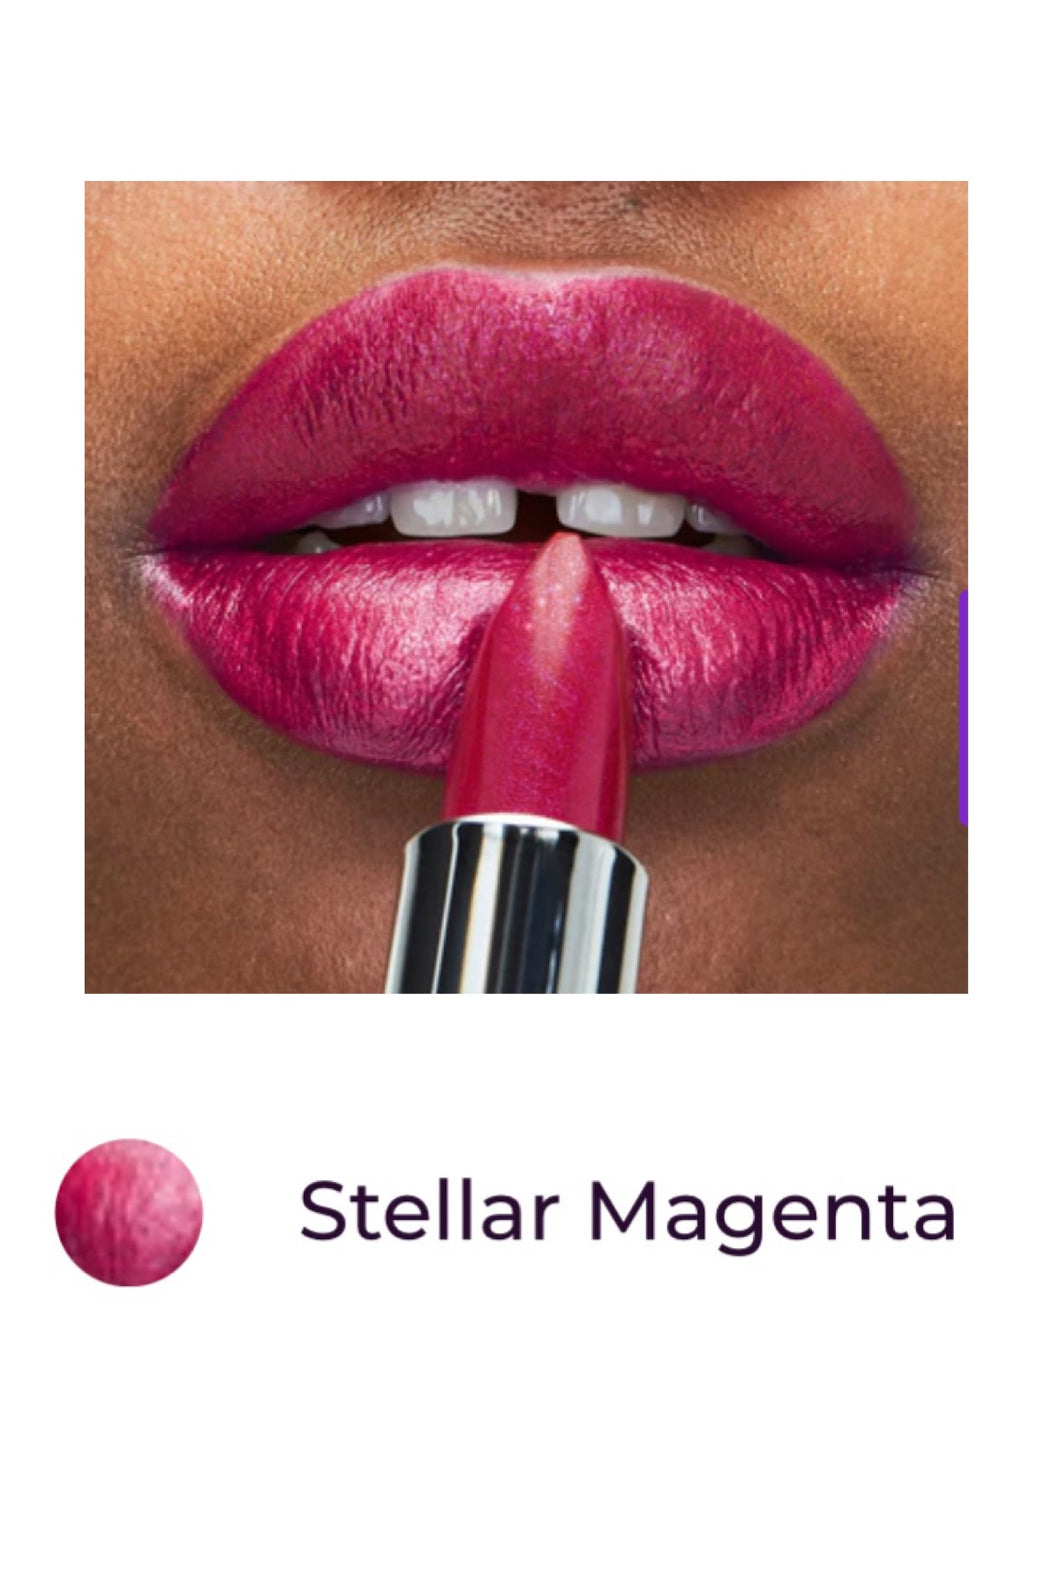 Stellar Magenta Ultra Shimmer Lipstick